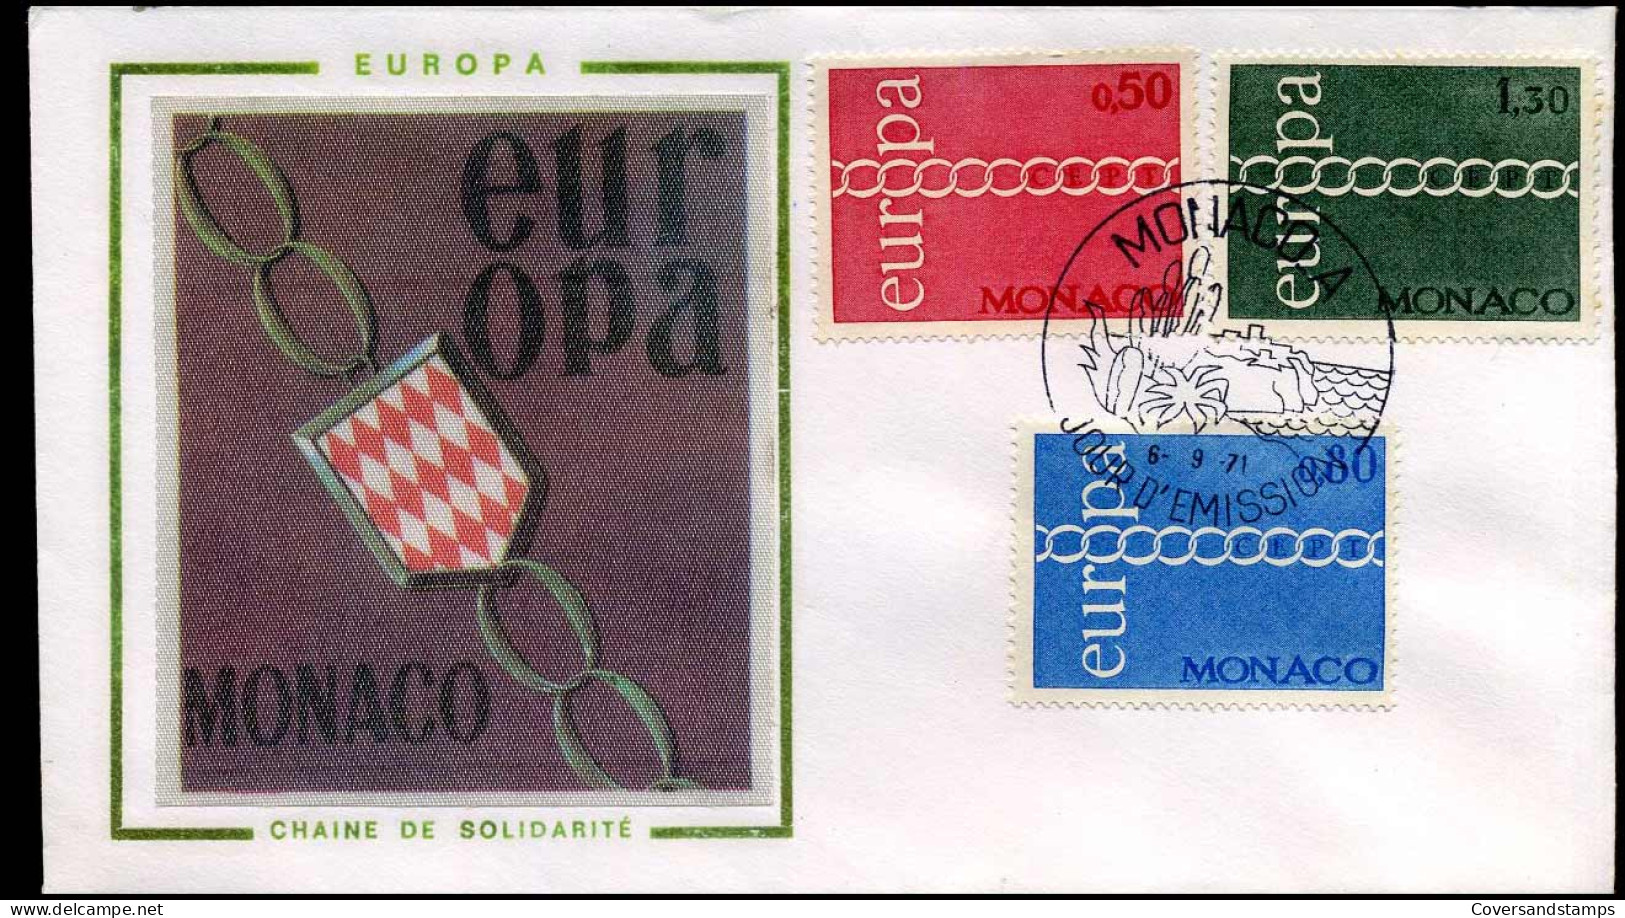 Monaco - FDC - Europa CEPT 1971 - 1971